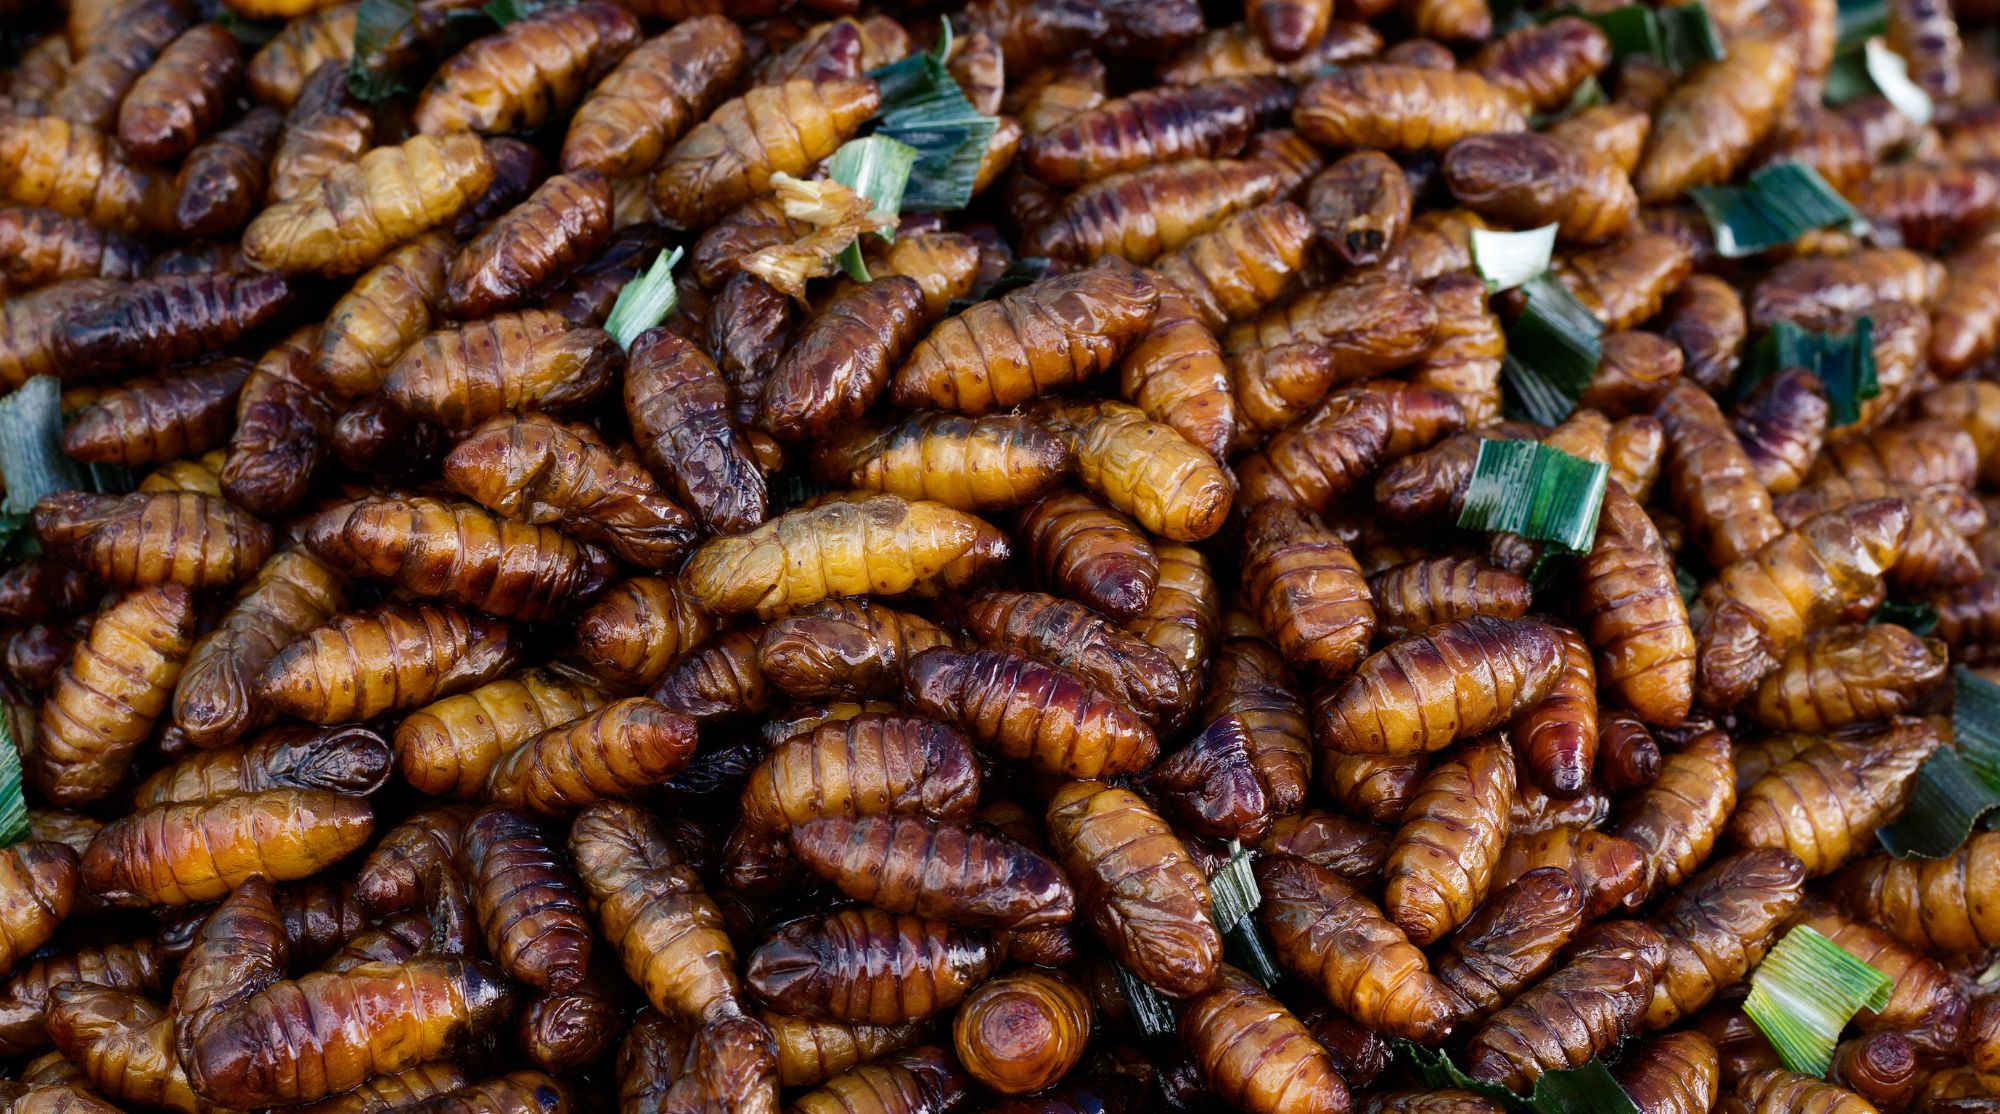 Cuisine D'insectes Entomophagie Comme Insectes Comestibles Manger Des Insectes  Manger image libre de droit par lightsource © #449080698